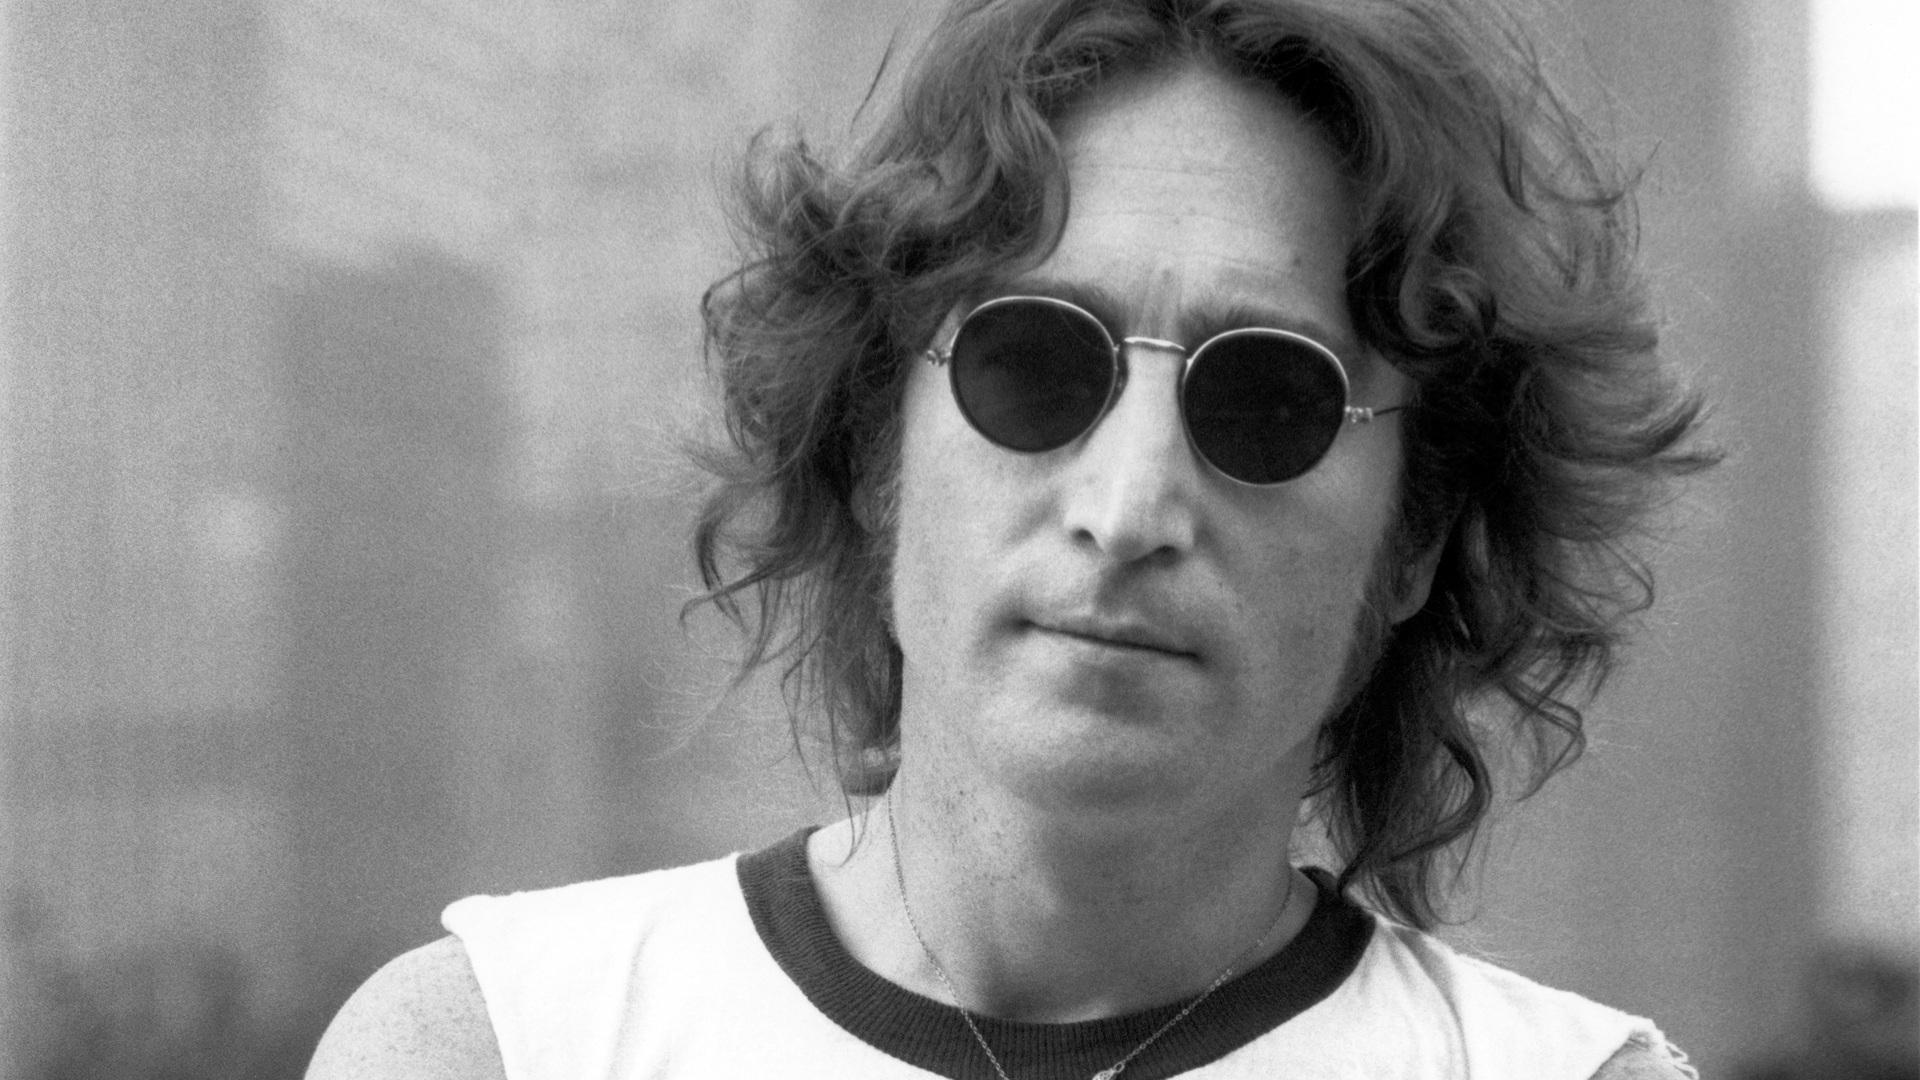 High Resolution Wallpaper | John Lennon 1920x1080 px